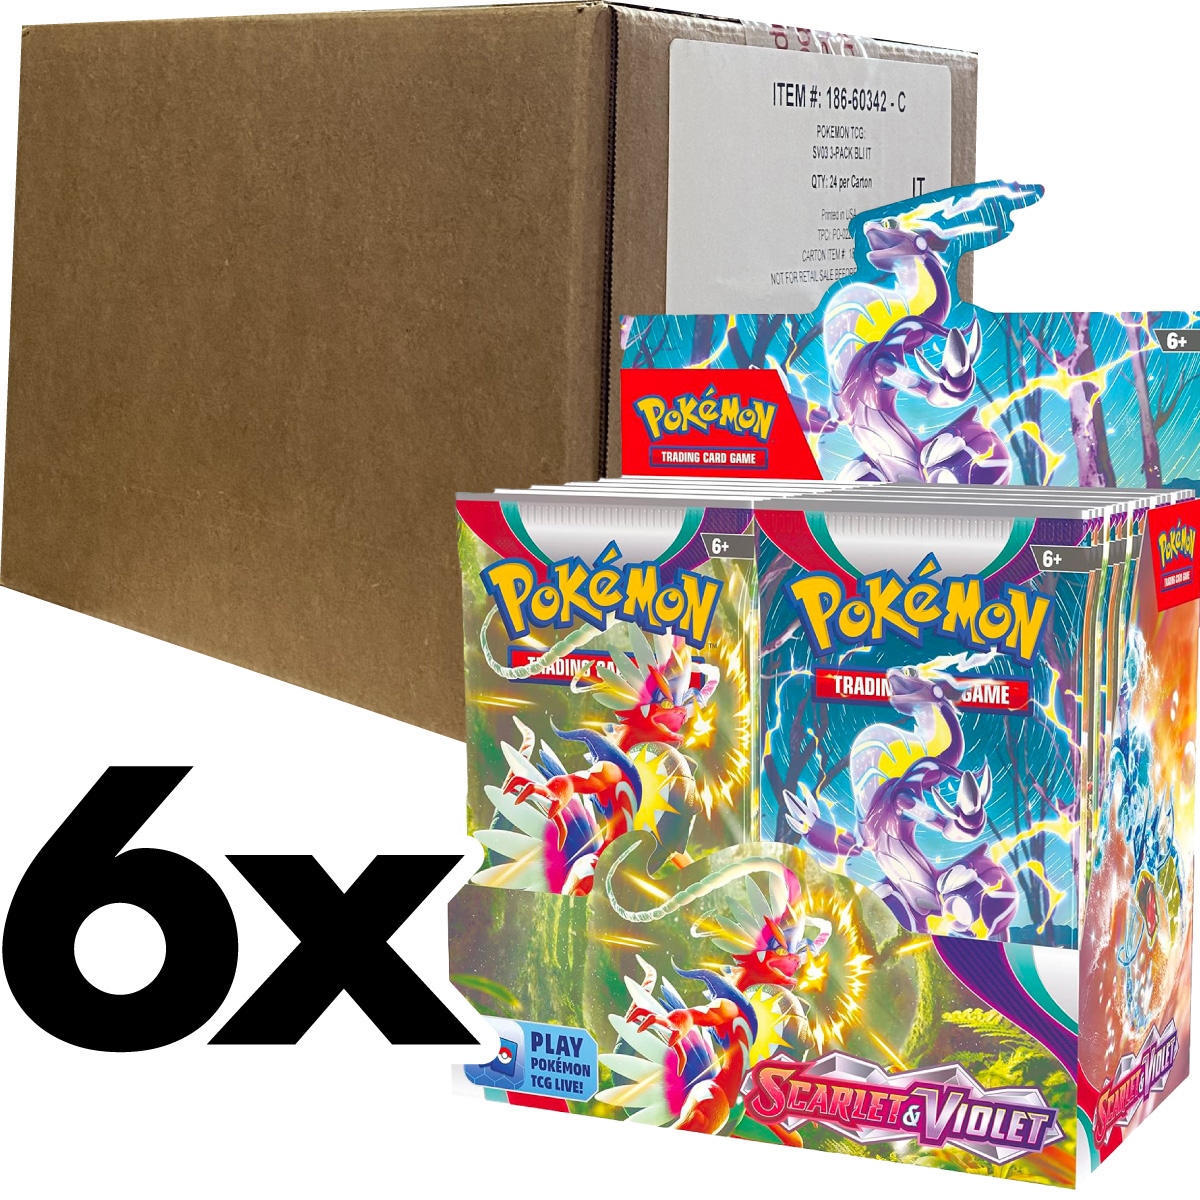 pokemon scarlatto e violetto  - case sigillato 6x box da 36 bustine (ita)